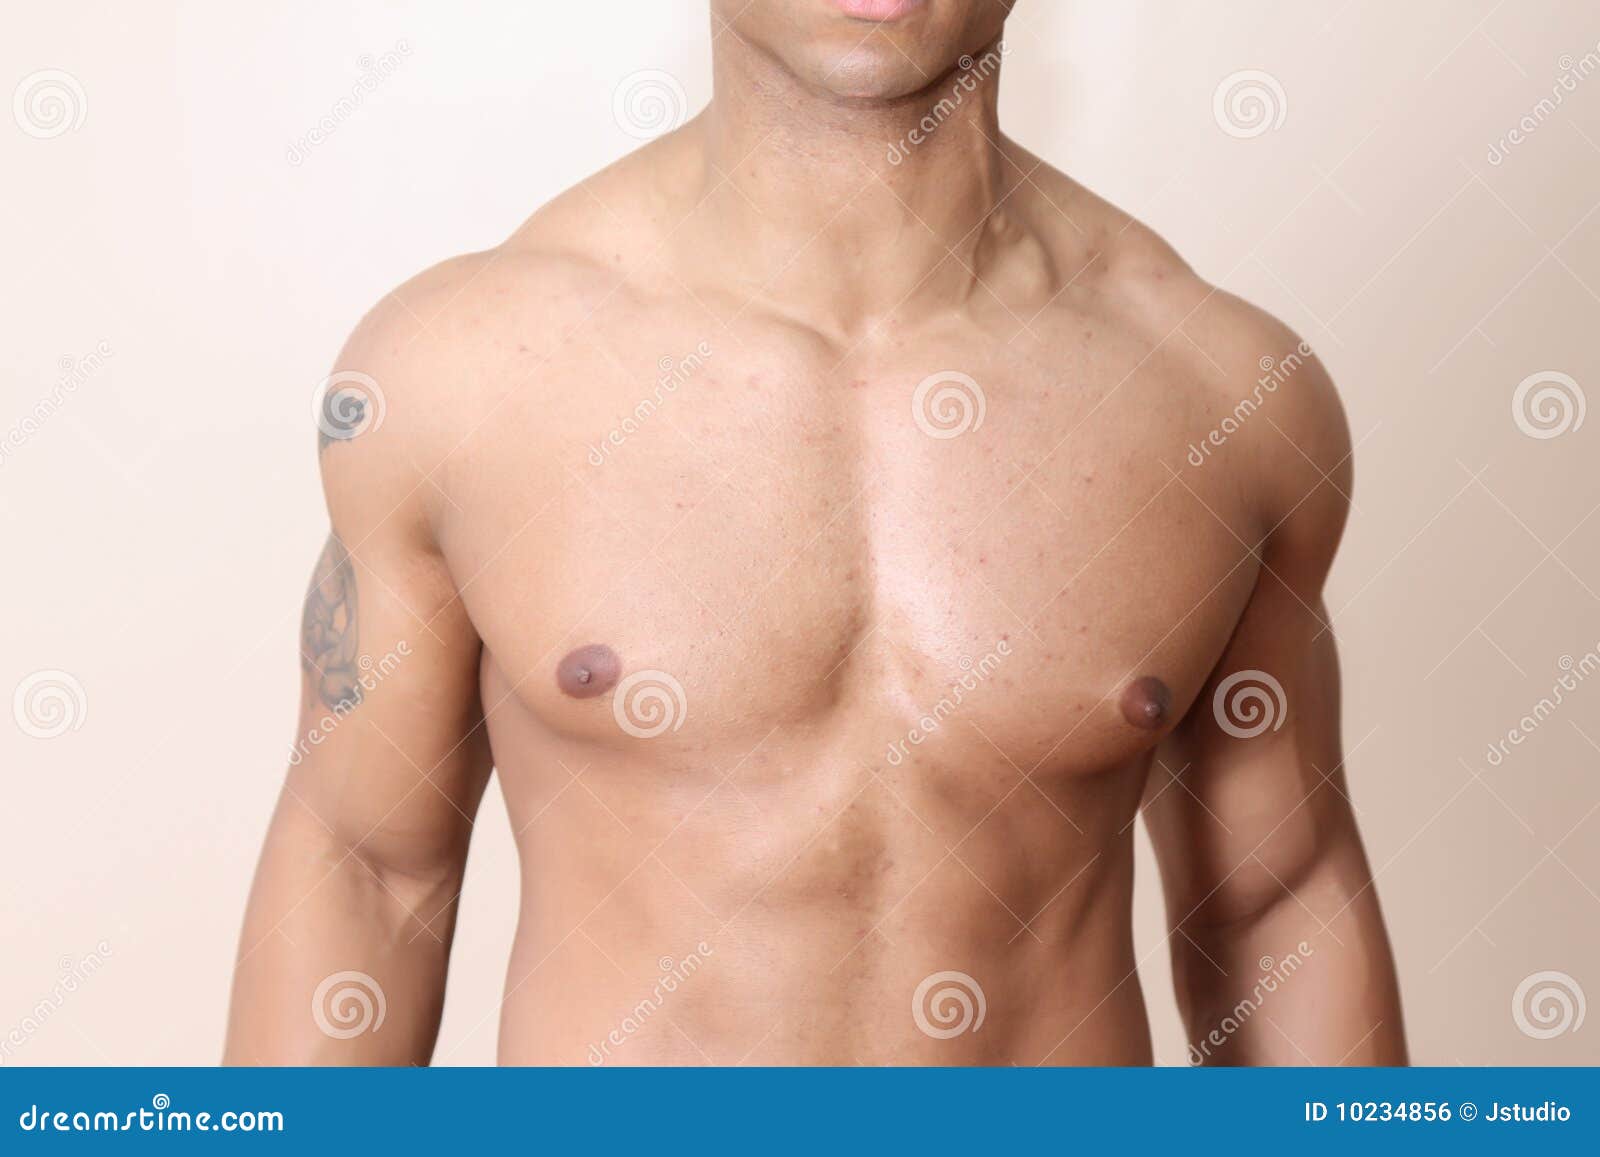 muscular male body